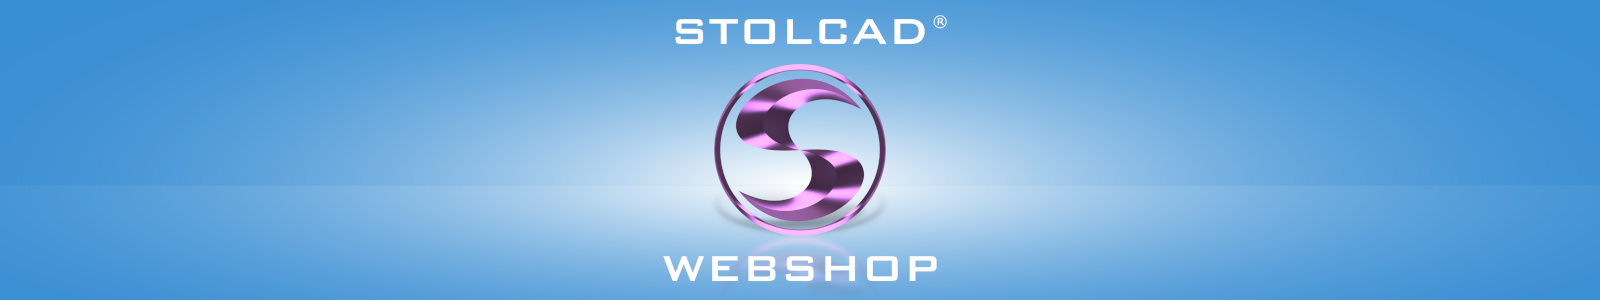 Stolcad Webshop - сайт для торговцев для оценки окон, дверей и жалюзи